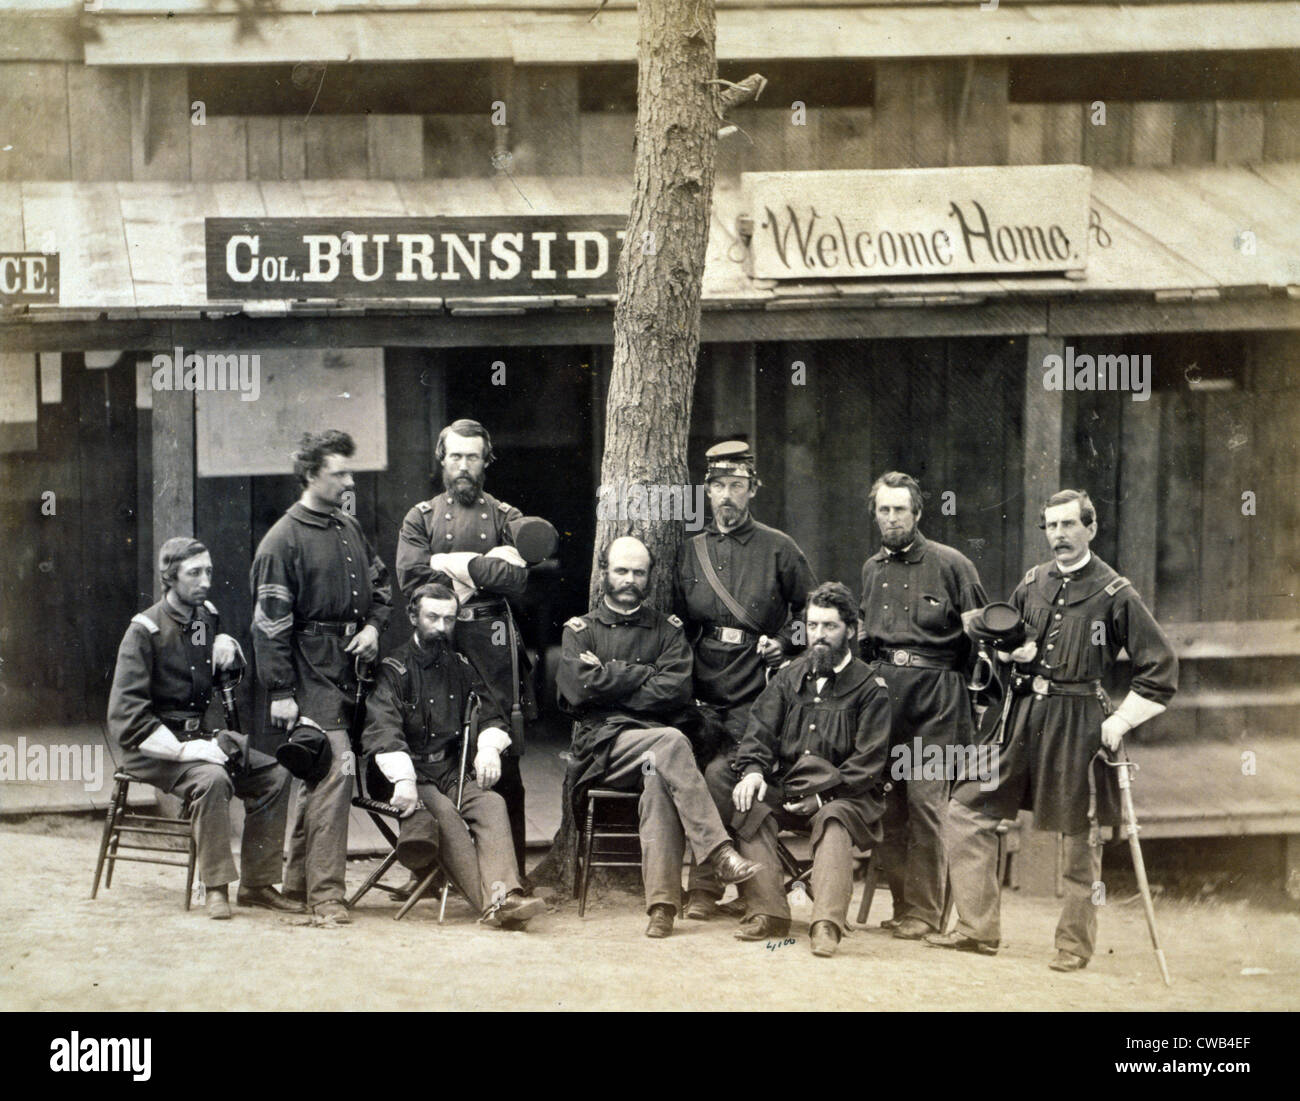 La guerra civile. Ambrogio Everett Burnside con otto ufficiali del lst Rhode Island volontari nella parte anteriore dell'edificio, con segno Foto Stock